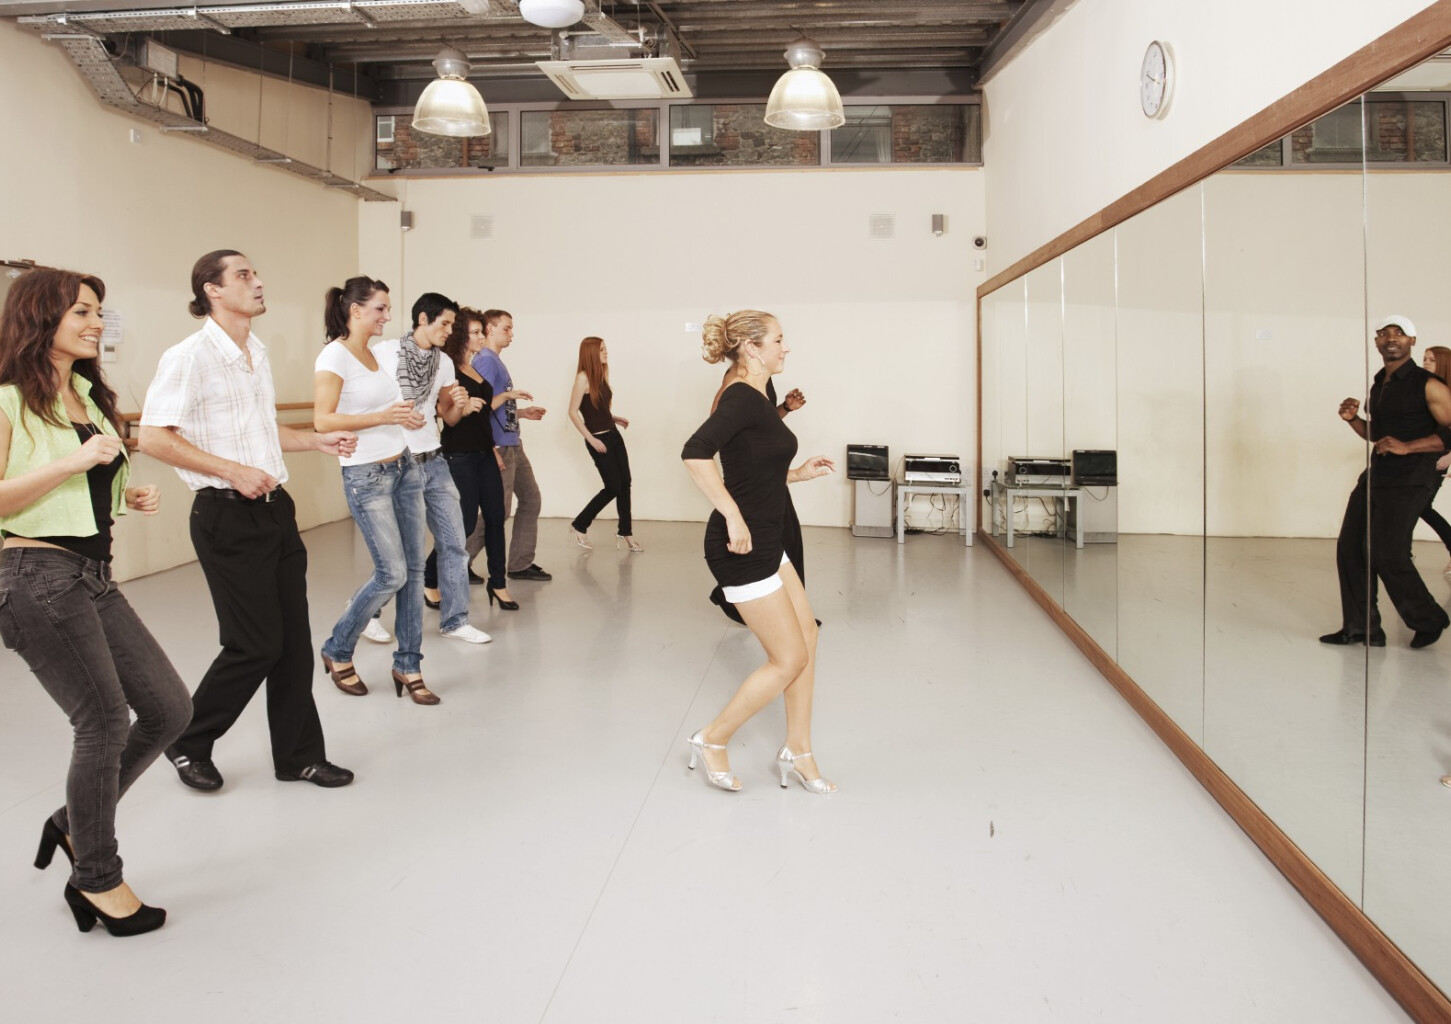 Instruktor Tańca | Kurs Online